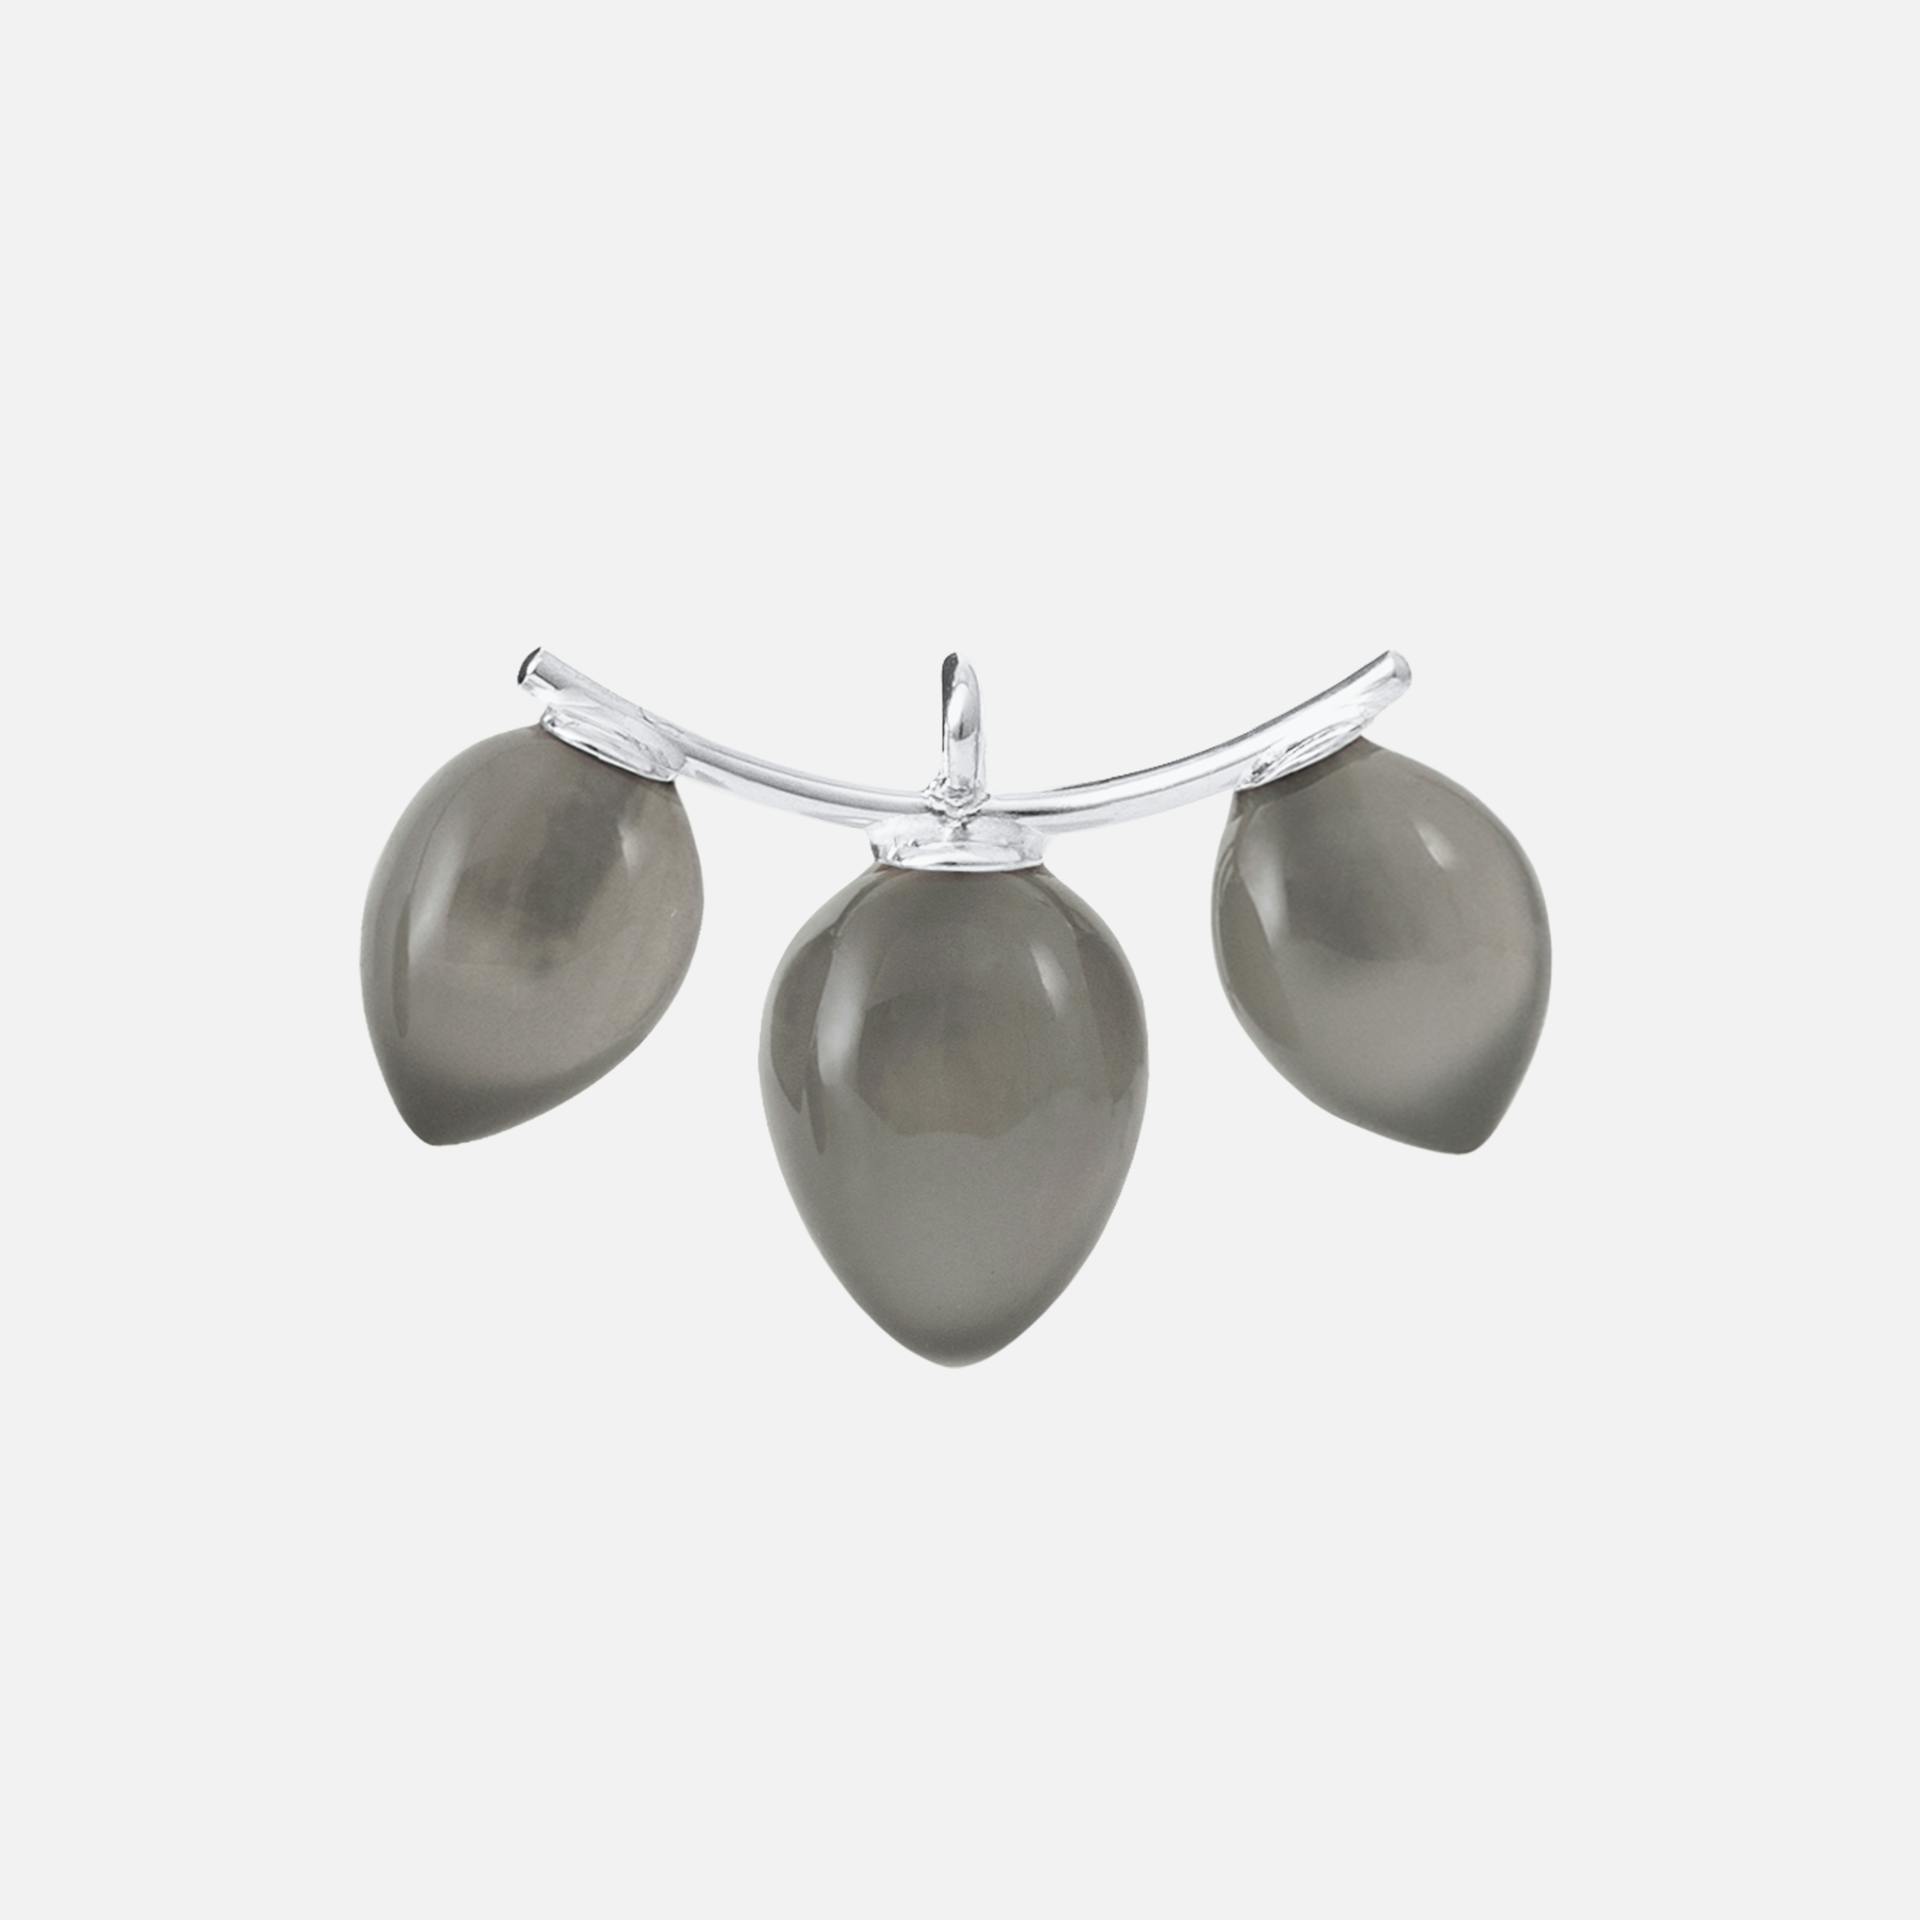 Lotus Earring Pendants in White Gold with Grey Moonstone Drops  |  Ole Lynggaard Copenhagen